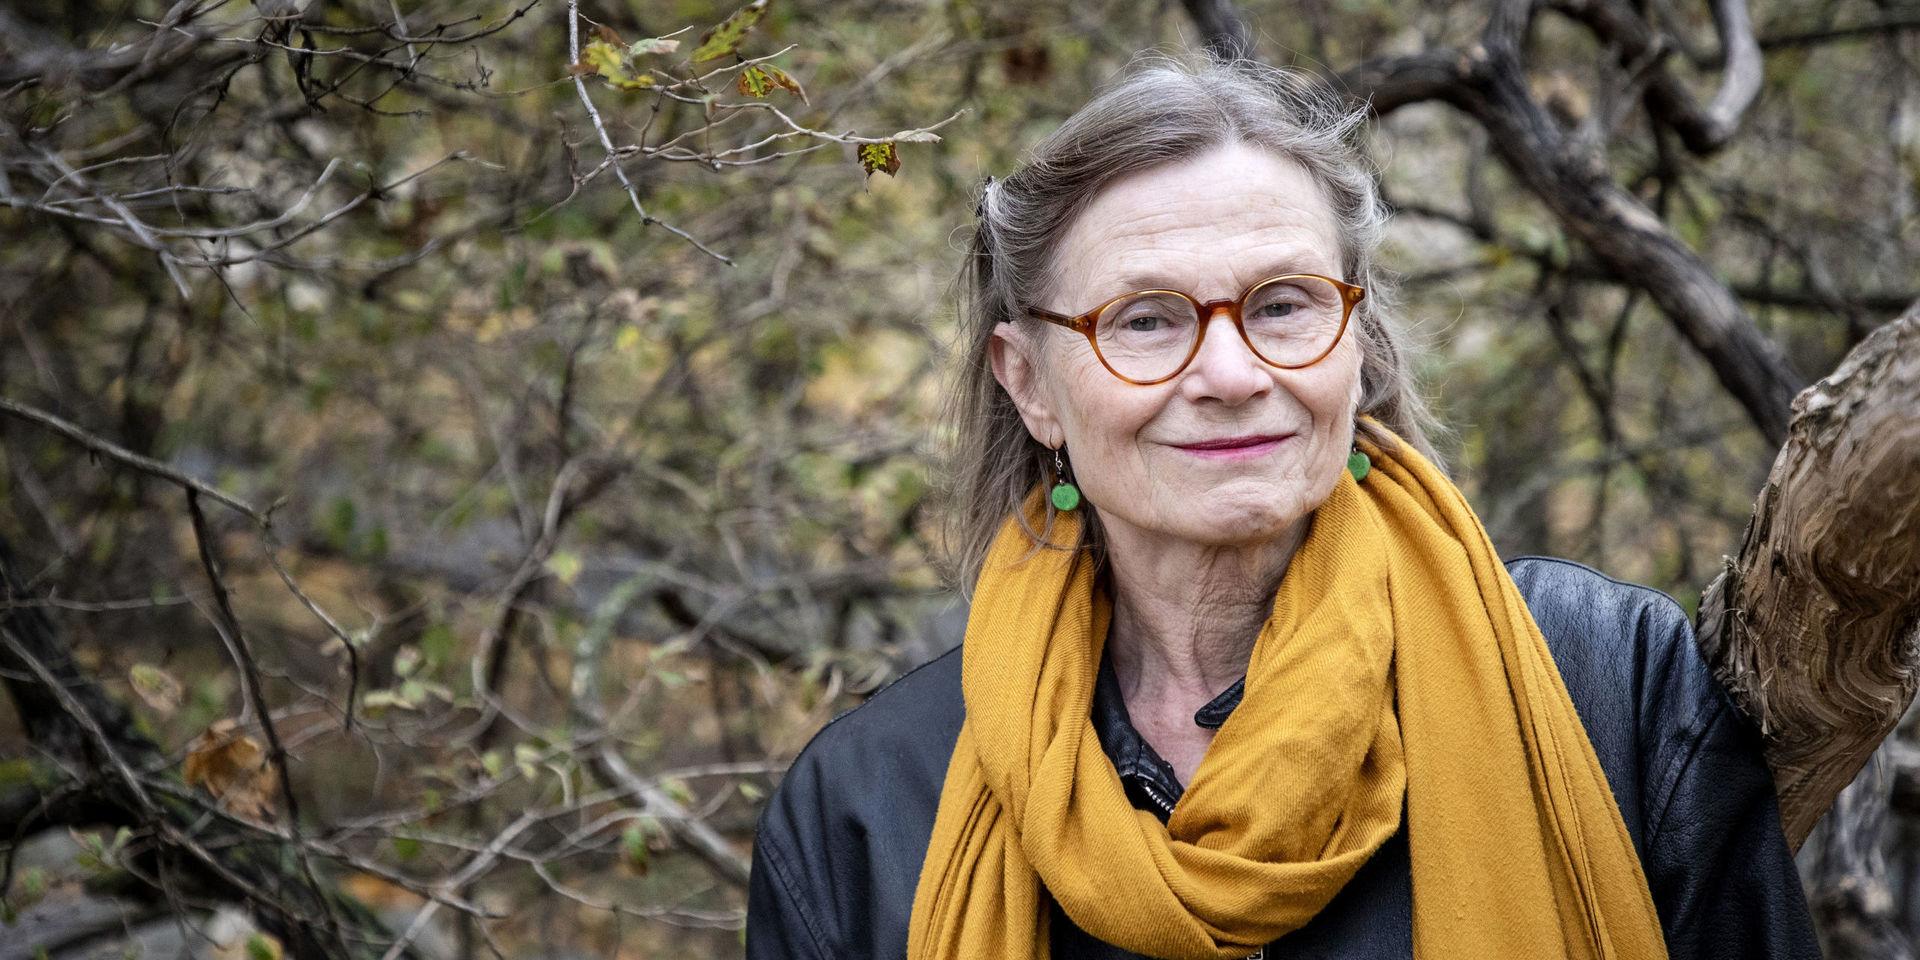 Lilian Edvalls första bok, ”Mensboken”, kom i mitten av 1980-talet och blev snabbt populär. Fem år senare var det dags för nästa projekt som behandlade klimakteriet. Nu fyller hon 70 år.